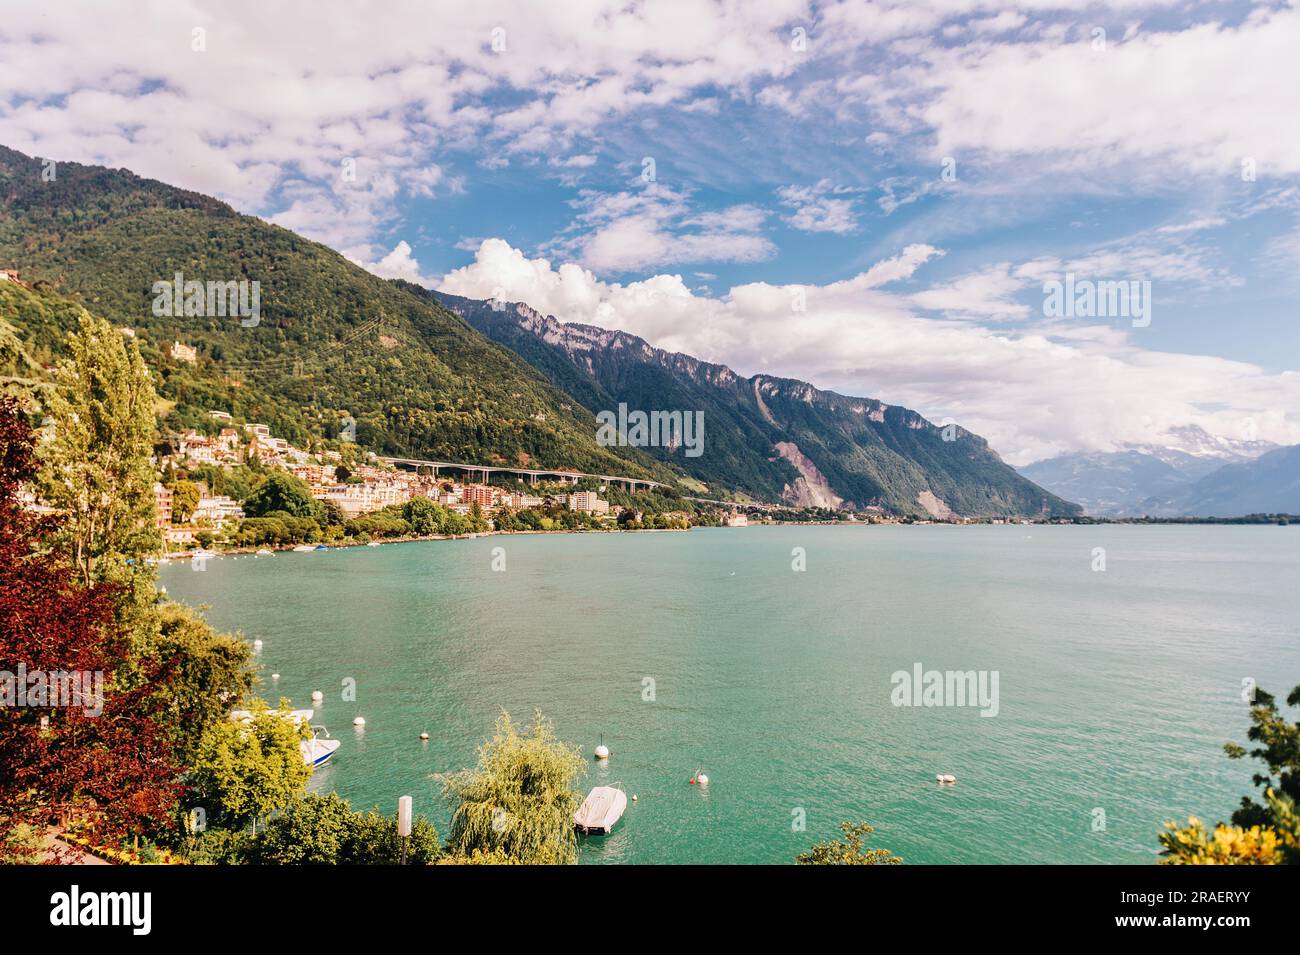 Summer landscape of Montreux city, Lake Geneva, Switzerland Stock Photo